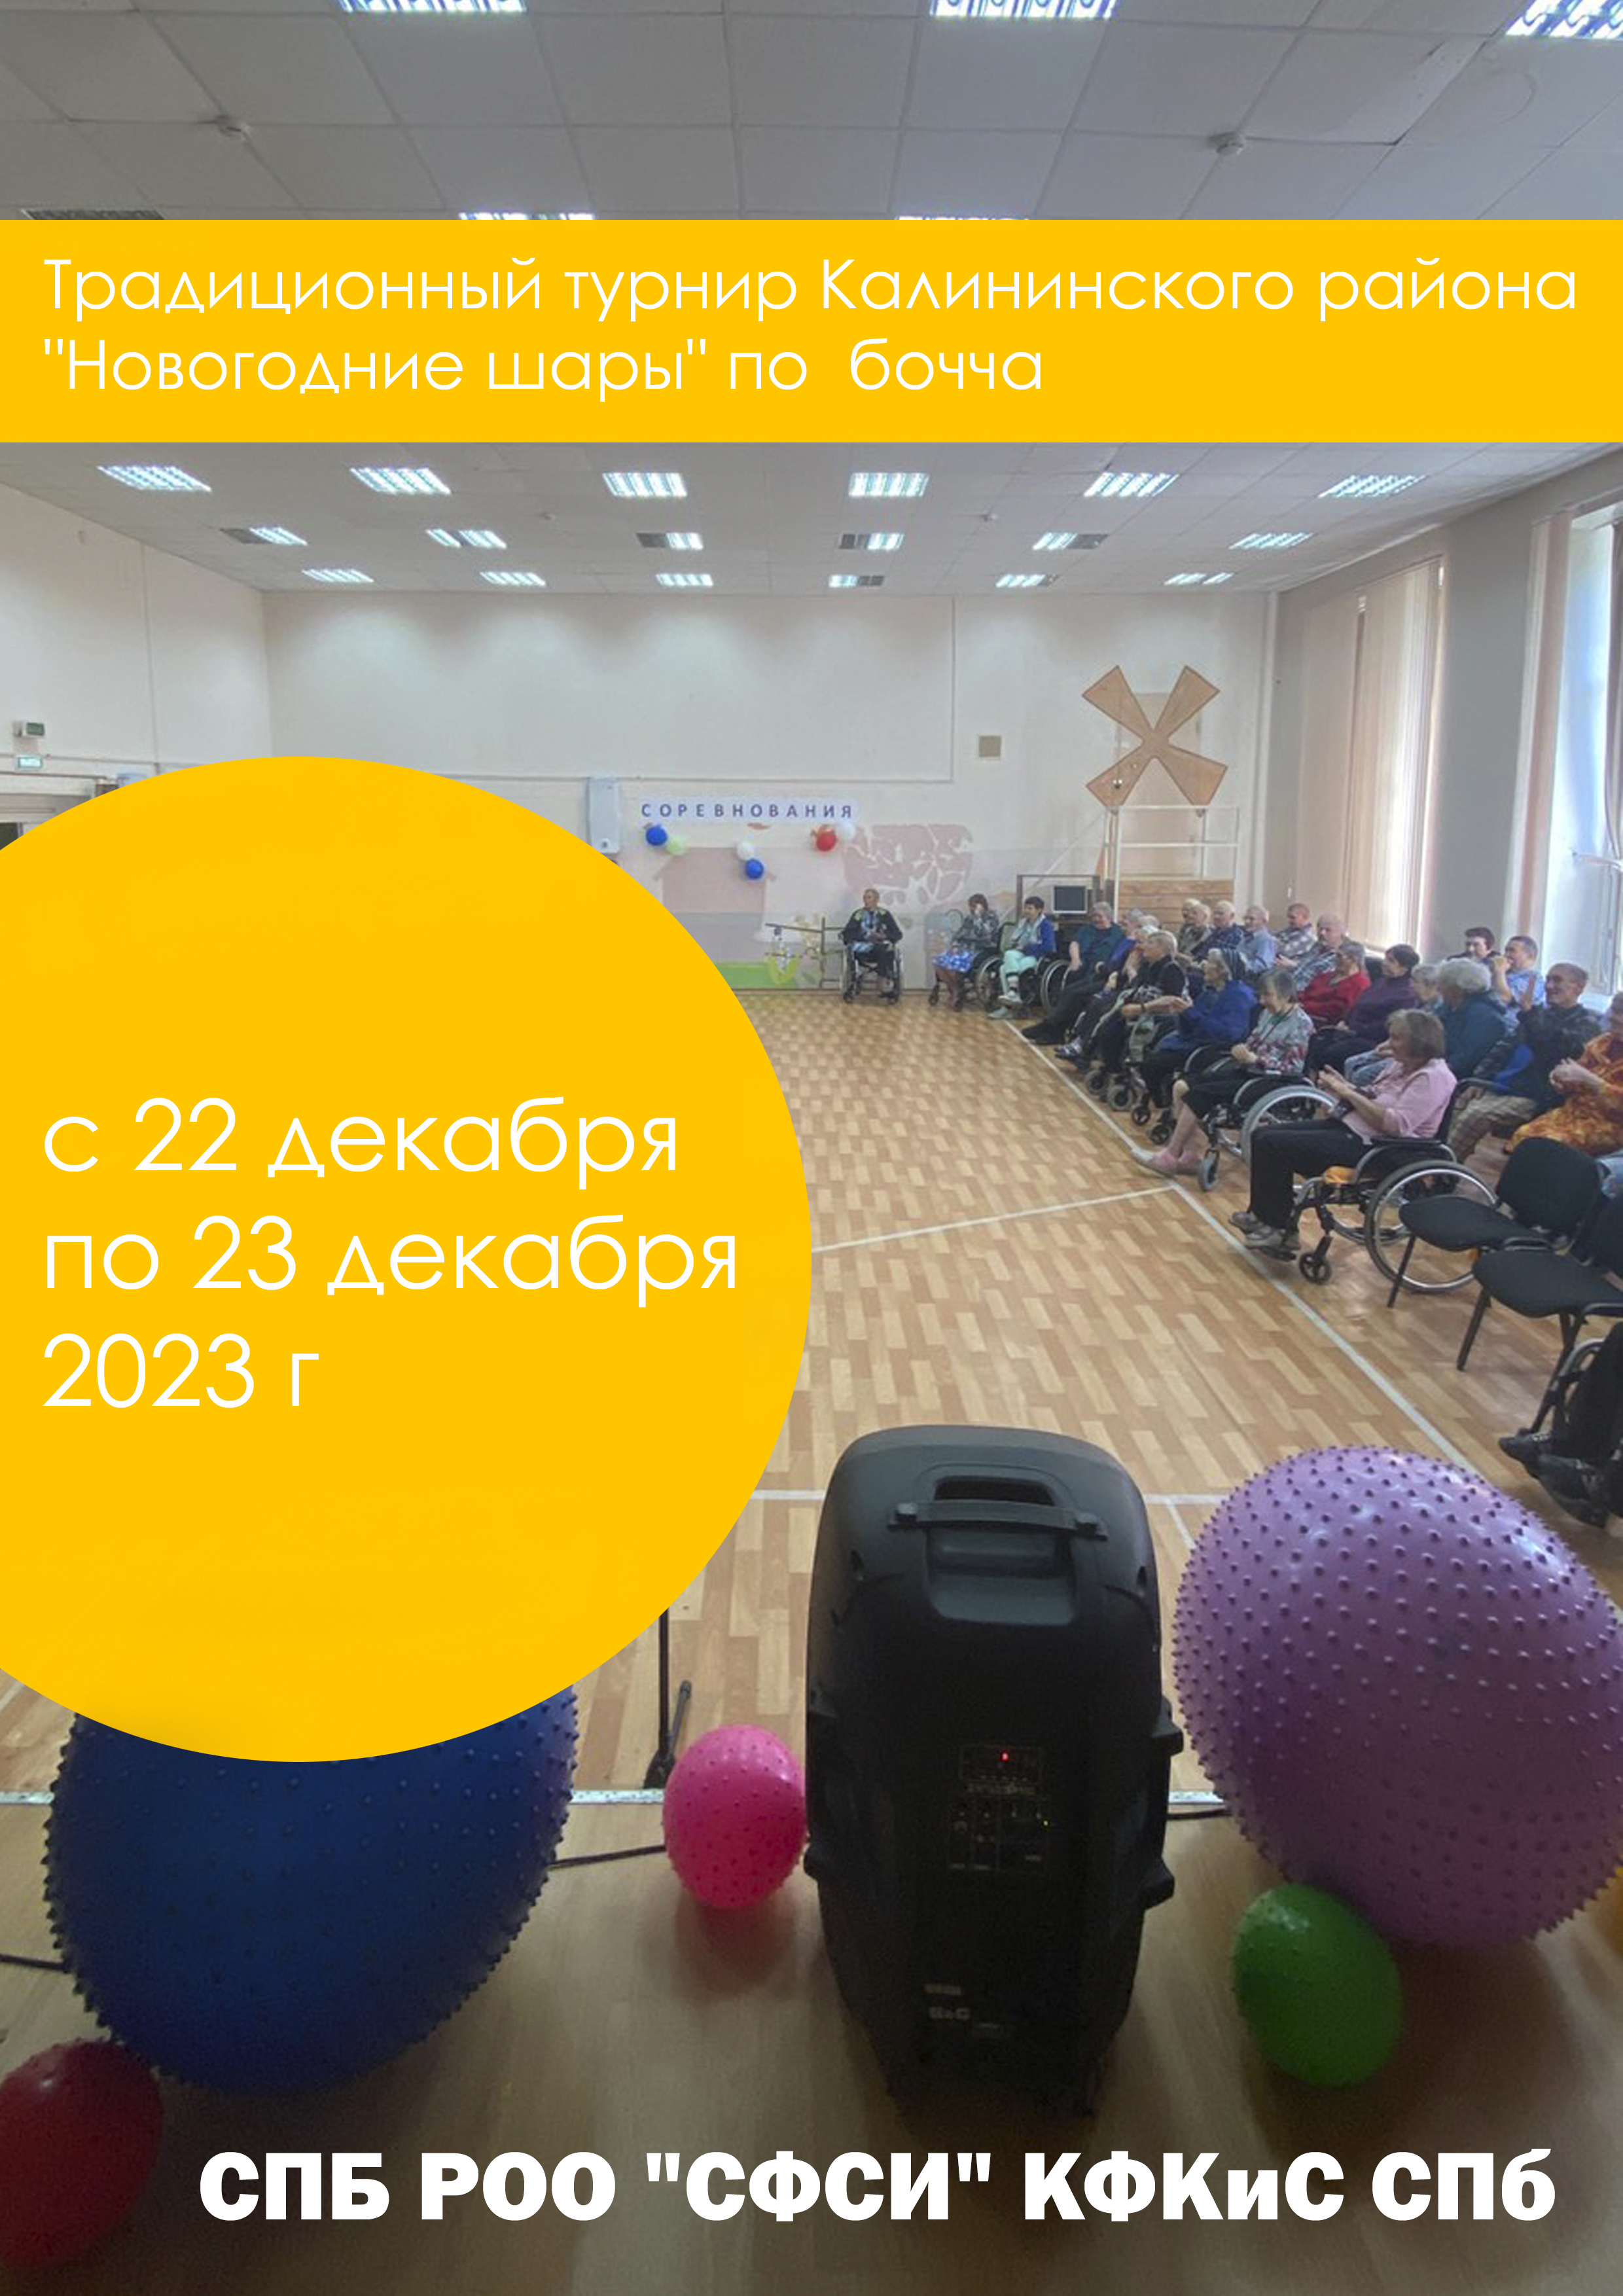 Традиционный турнир Калининского района "Новогодние шары" по бочча 2023 22 декабря 2023 года 